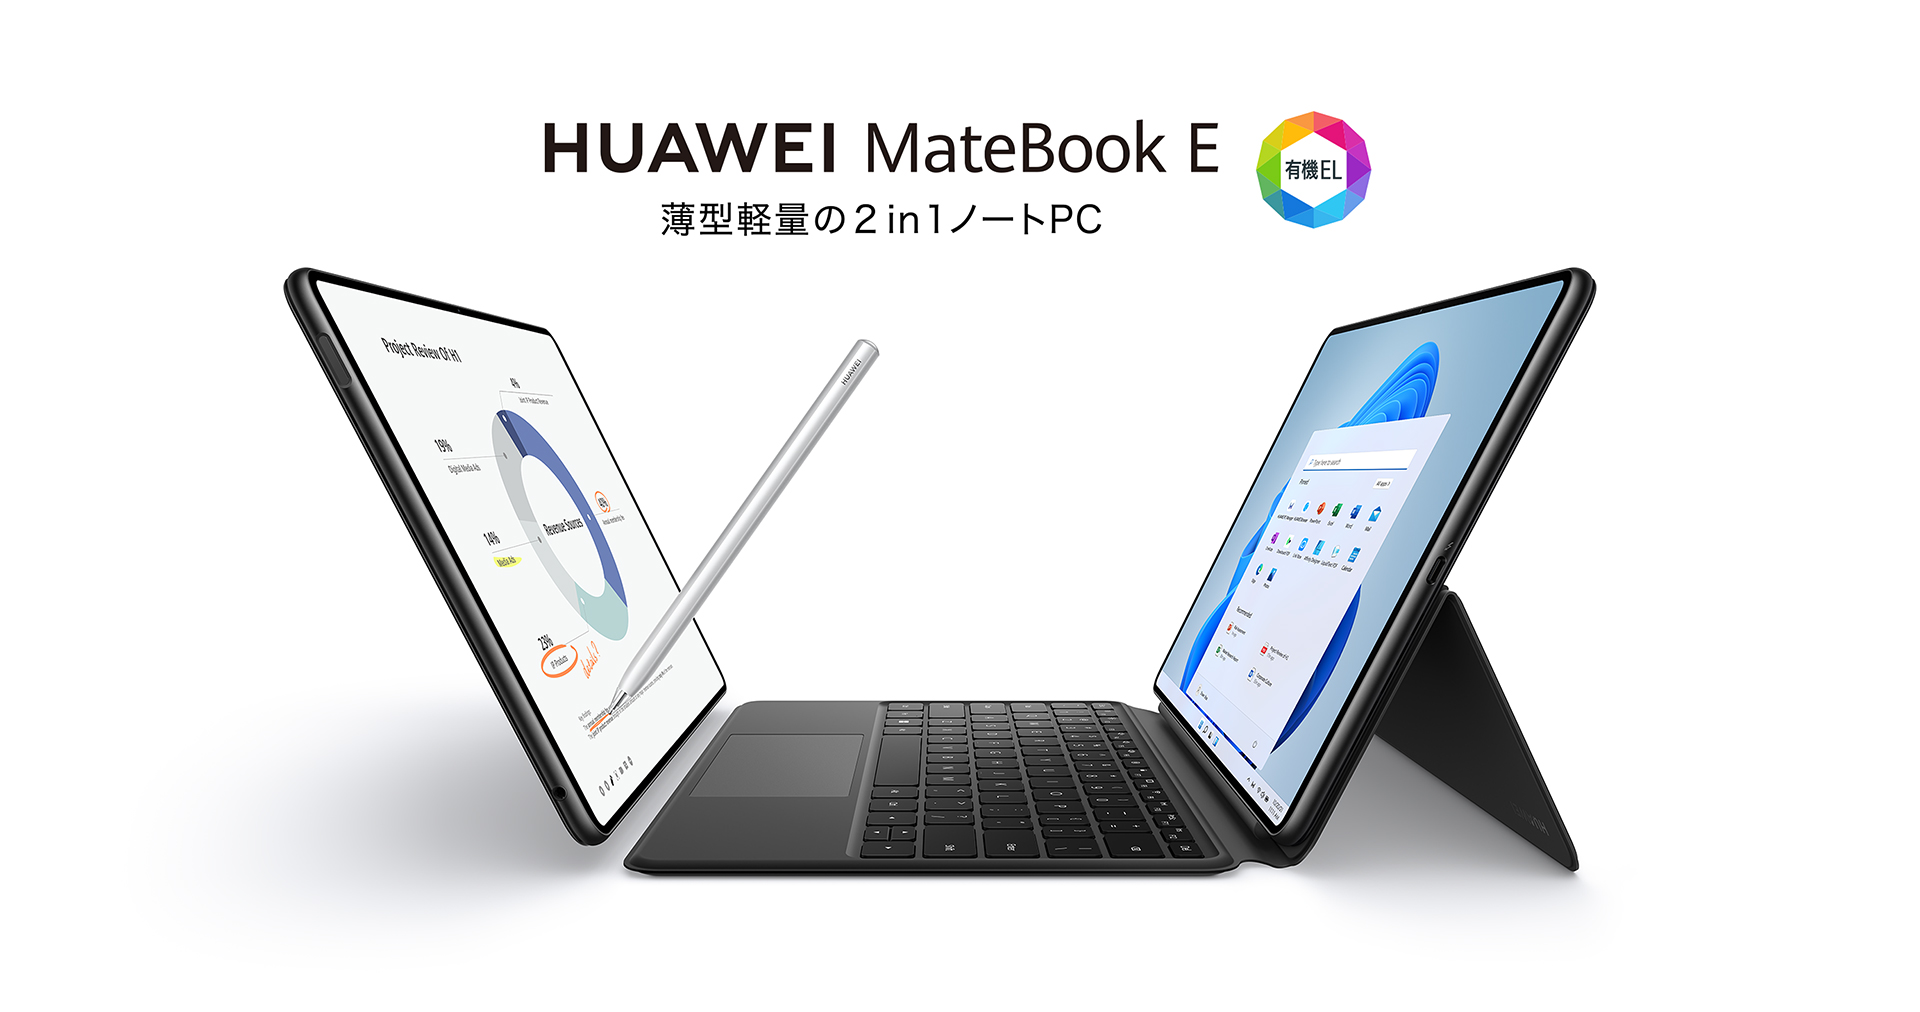 Huawei Matebook E core i5